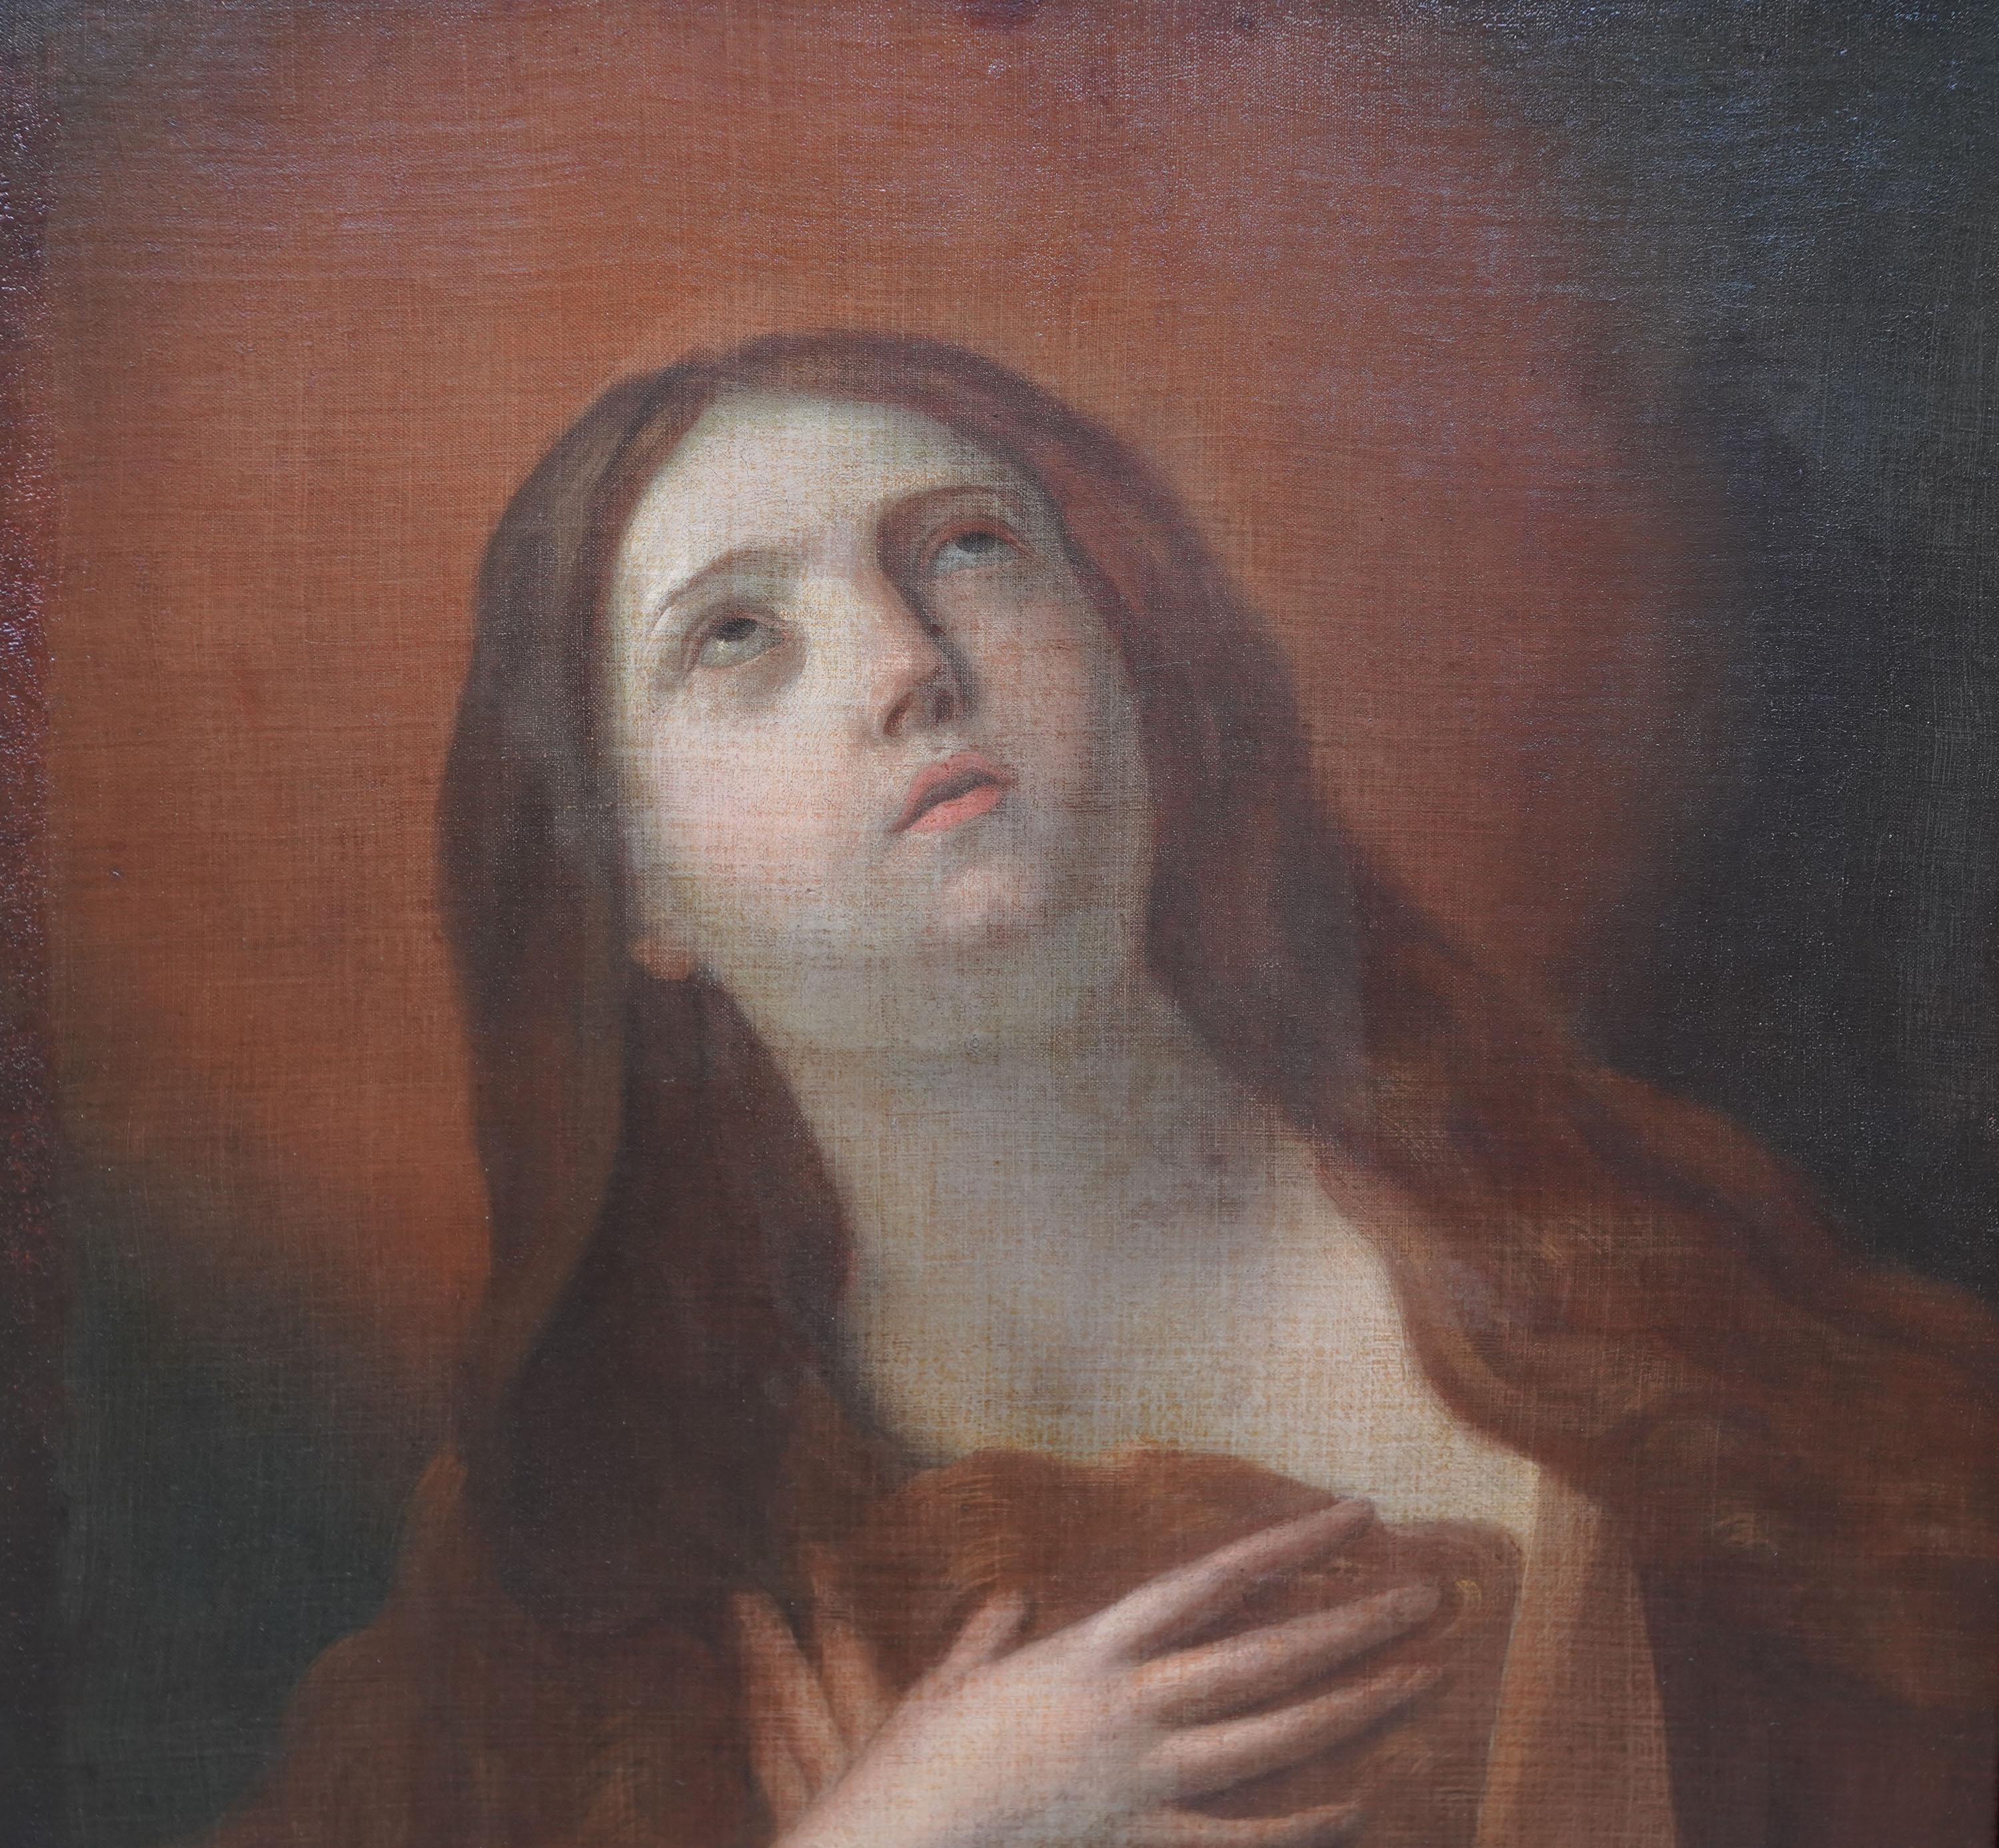 Dies ist eine hervorragende italienische Altmeister Porträt Ölgemälde zugeschrieben Kreis von Guido Reni. Es handelt sich um ein halblanges Porträt der reumütigen Maria Magdalena mit zum Himmel gerichteten Augen und vor der Brust gefalteten Händen.